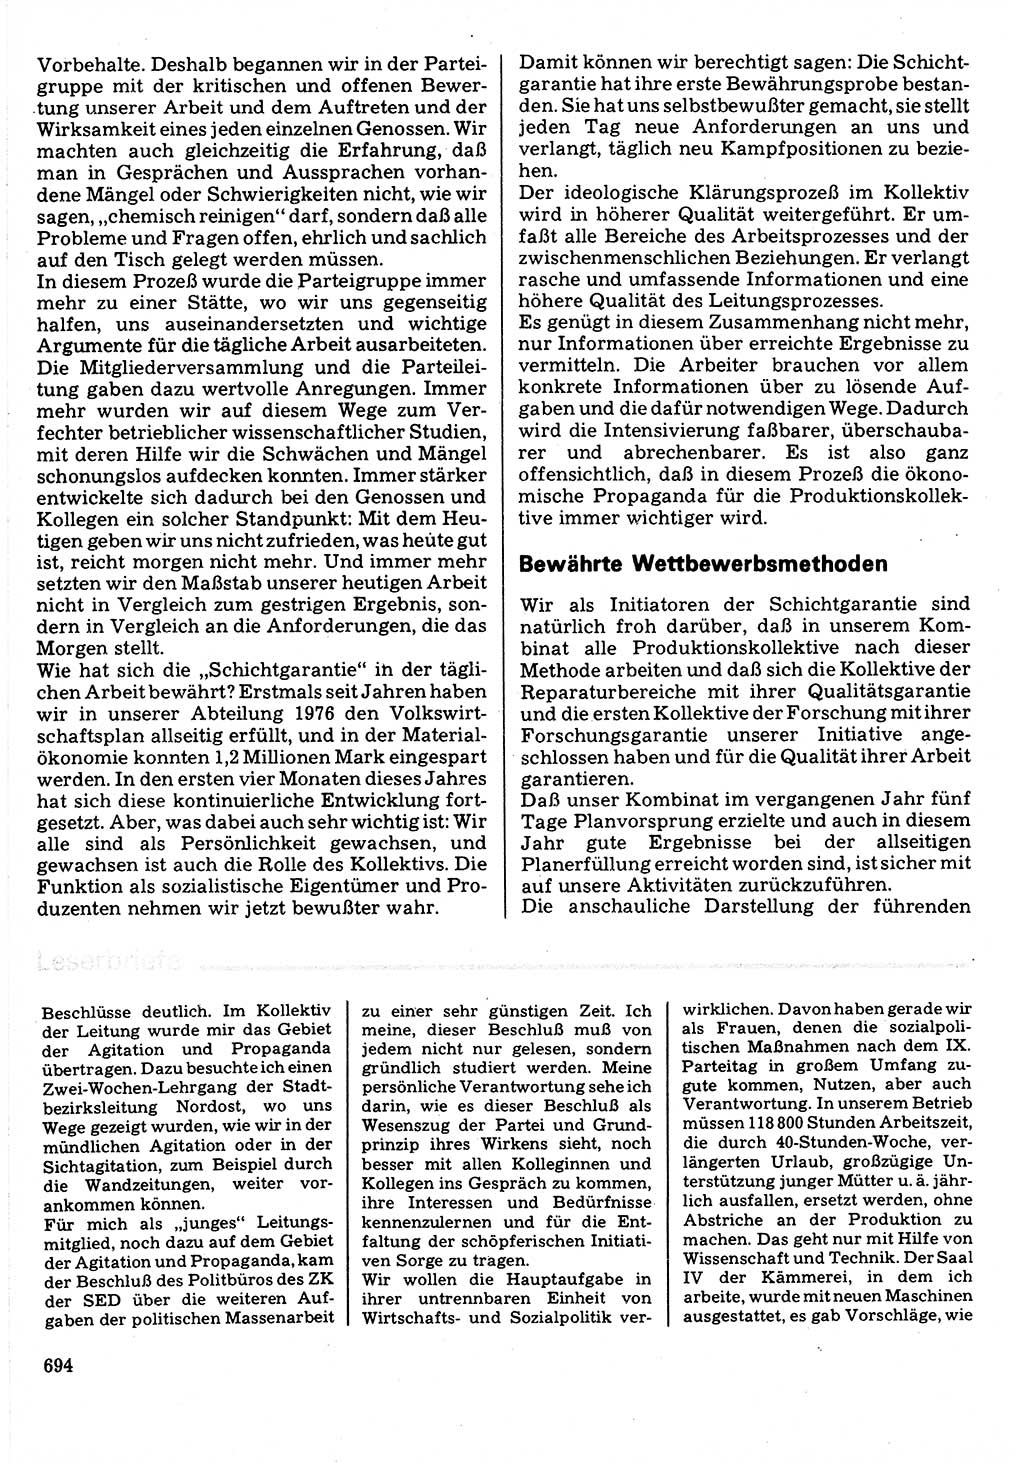 Neuer Weg (NW), Organ des Zentralkomitees (ZK) der SED (Sozialistische Einheitspartei Deutschlands) für Fragen des Parteilebens, 32. Jahrgang [Deutsche Demokratische Republik (DDR)] 1977, Seite 694 (NW ZK SED DDR 1977, S. 694)